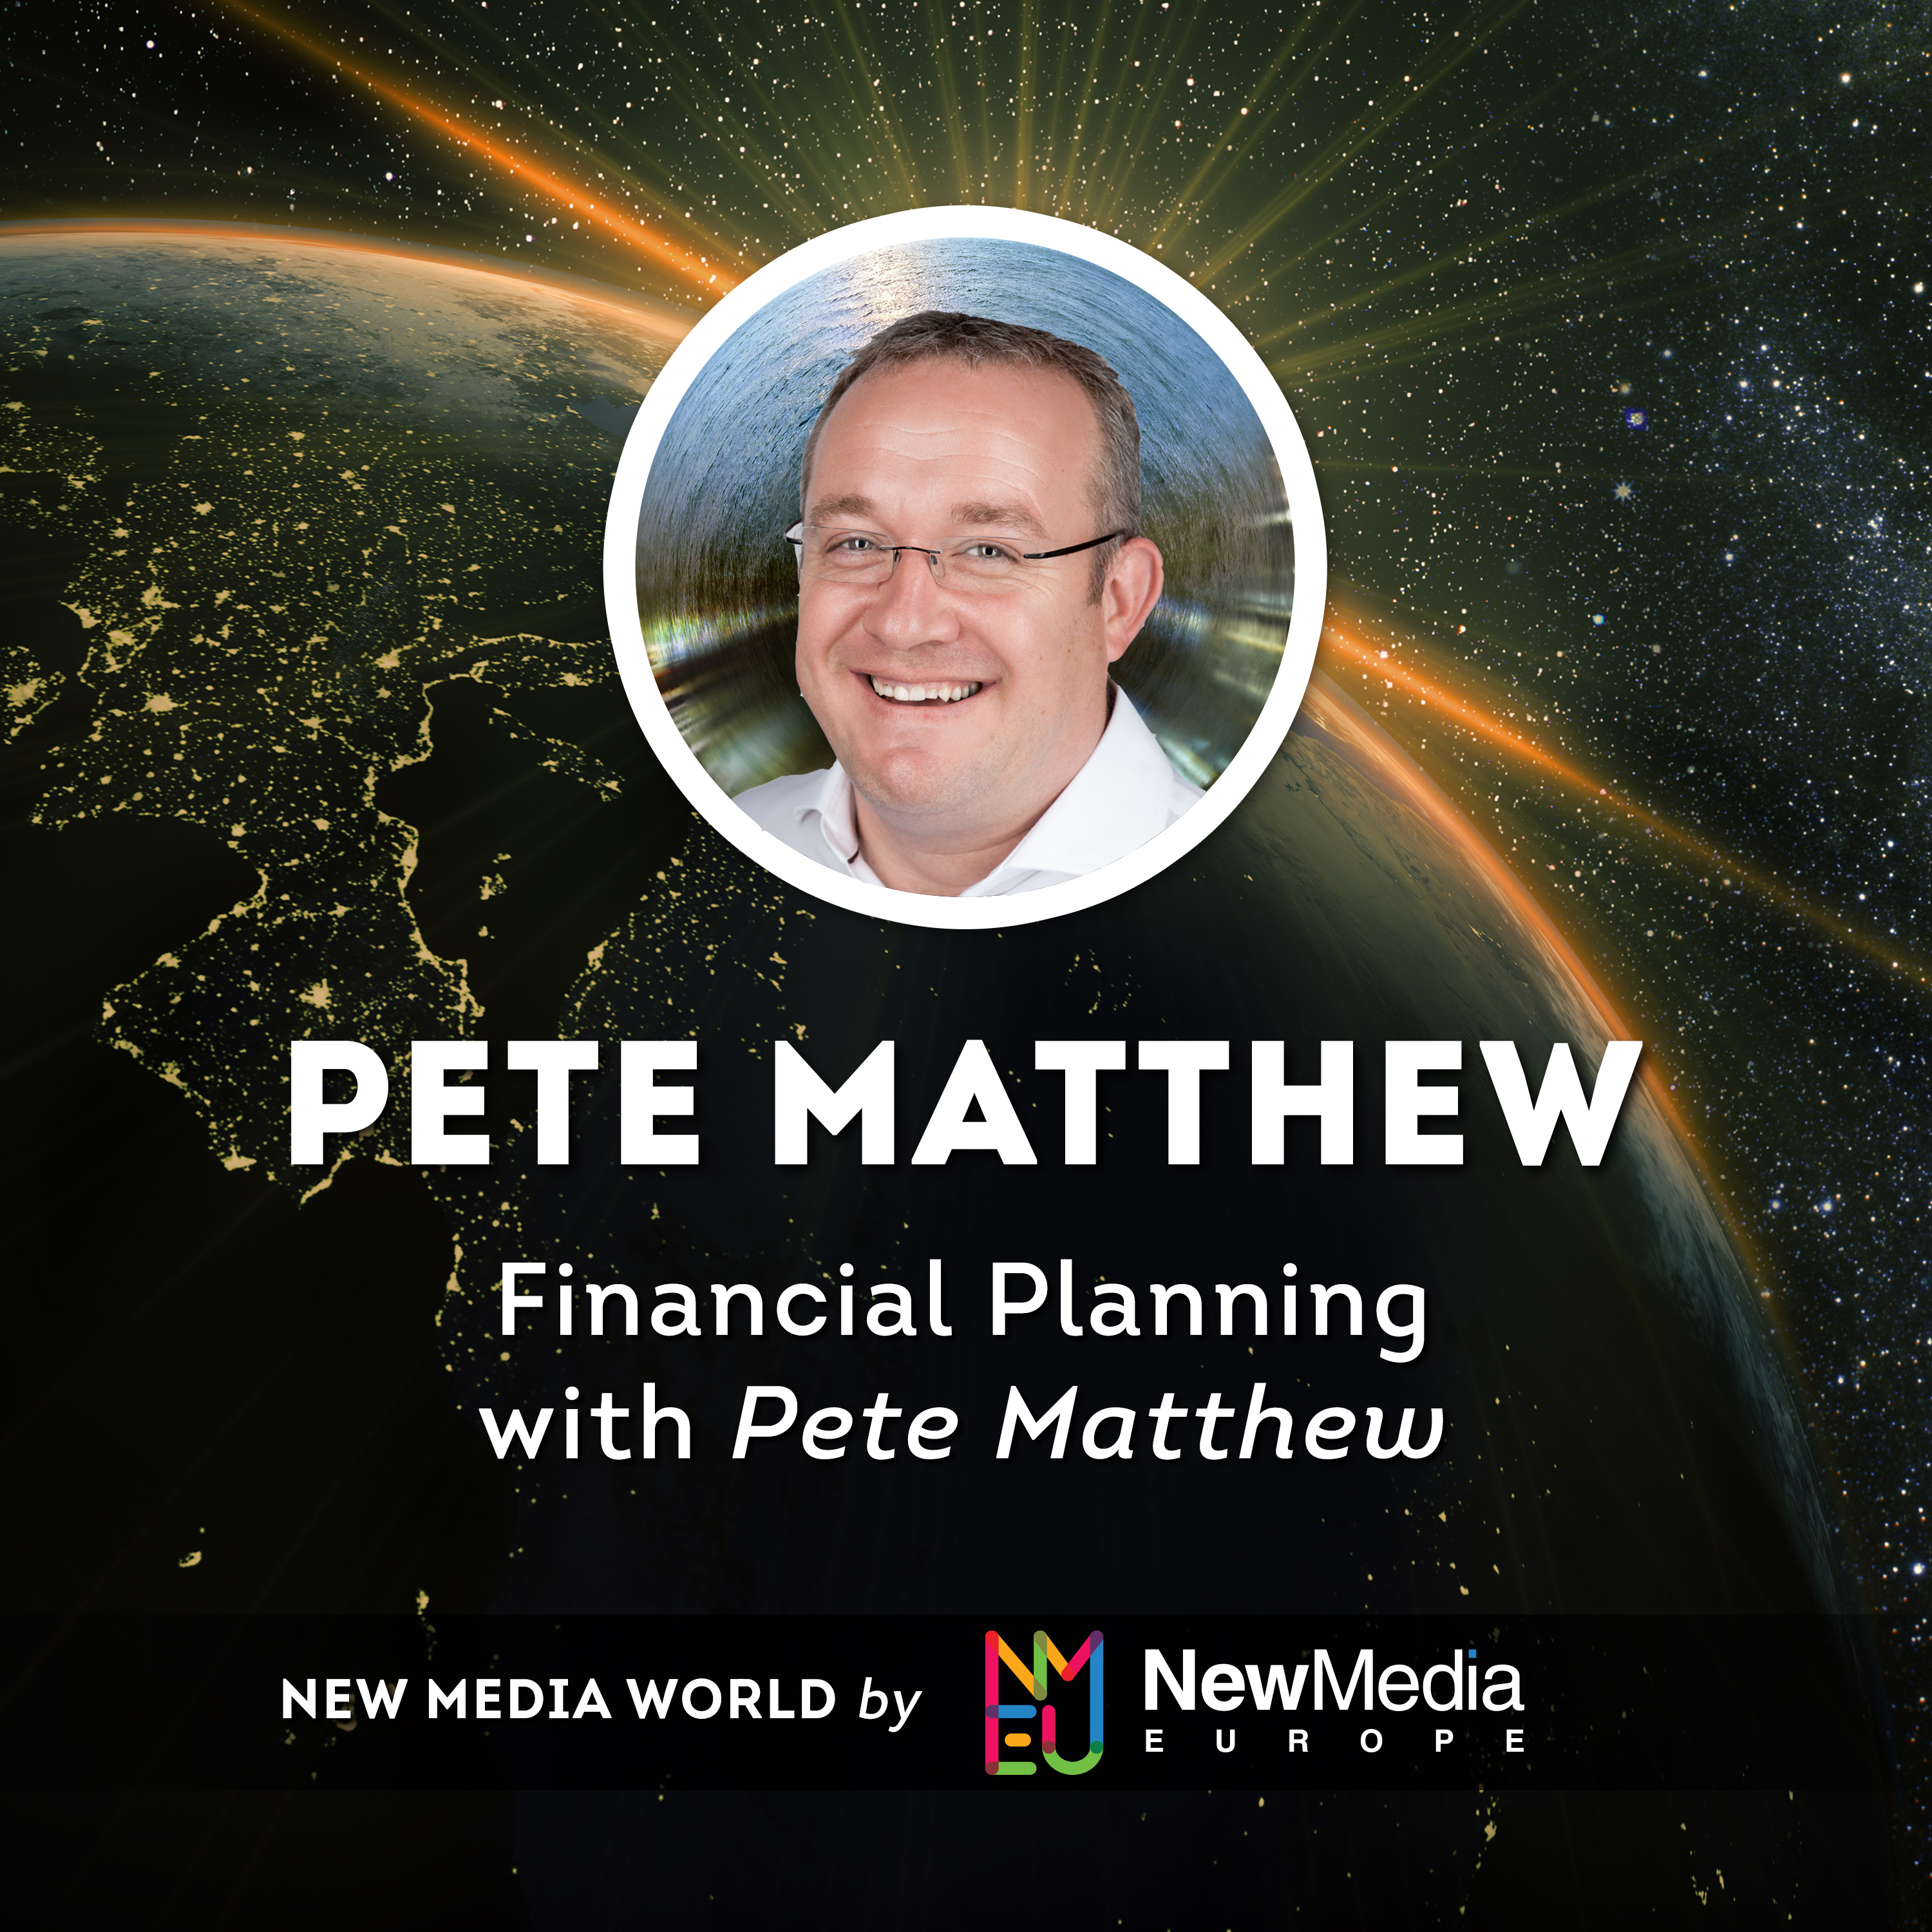 Pete Matthew